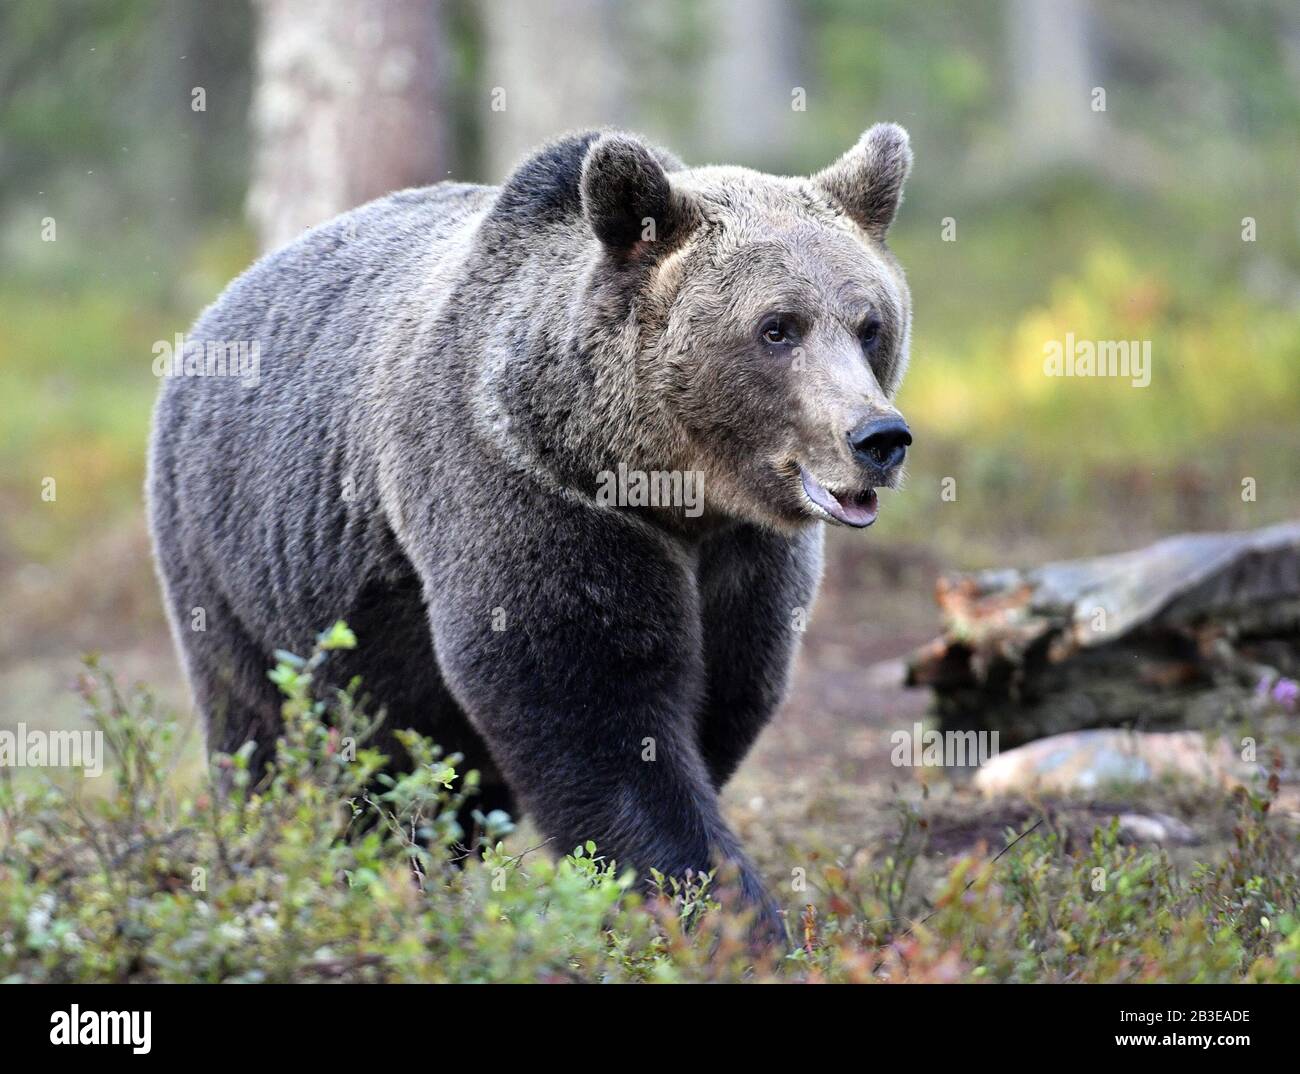 Ours brun dans la forêt d'été. Nom scientifique: Ursus arctos. Habitat naturel. Saison estivale. Banque D'Images